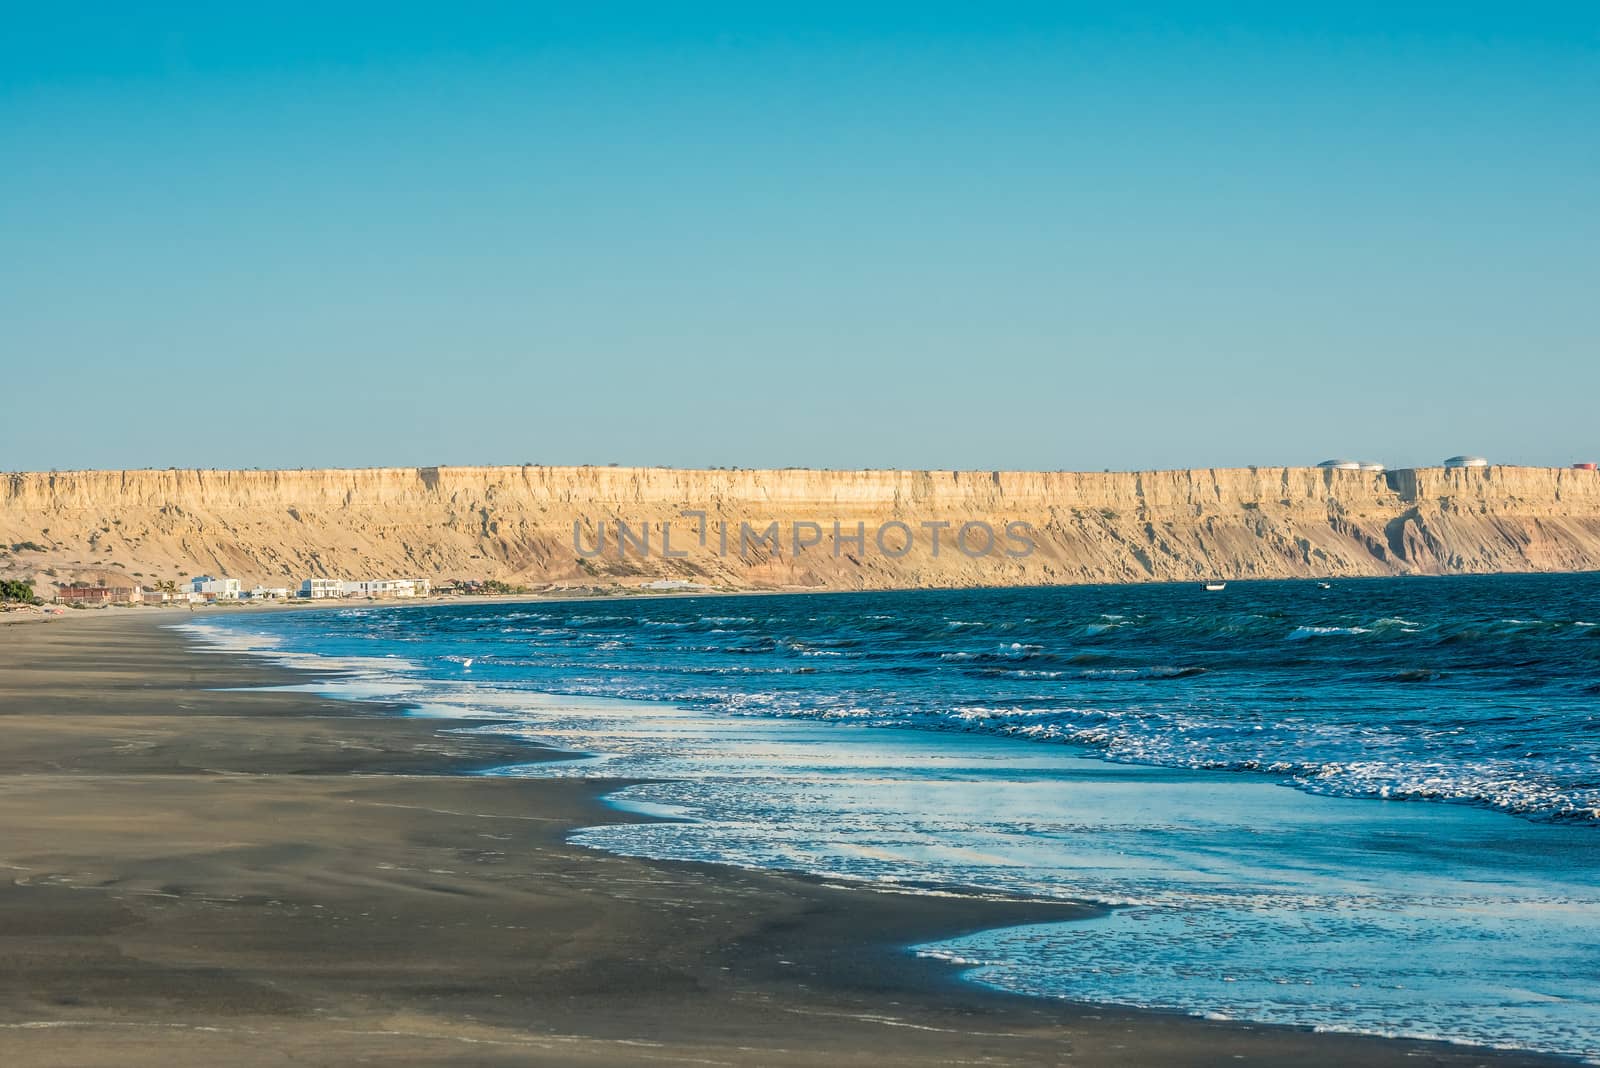 Colan beach in the peruvian coast at Piura Peru by PIXSTILL